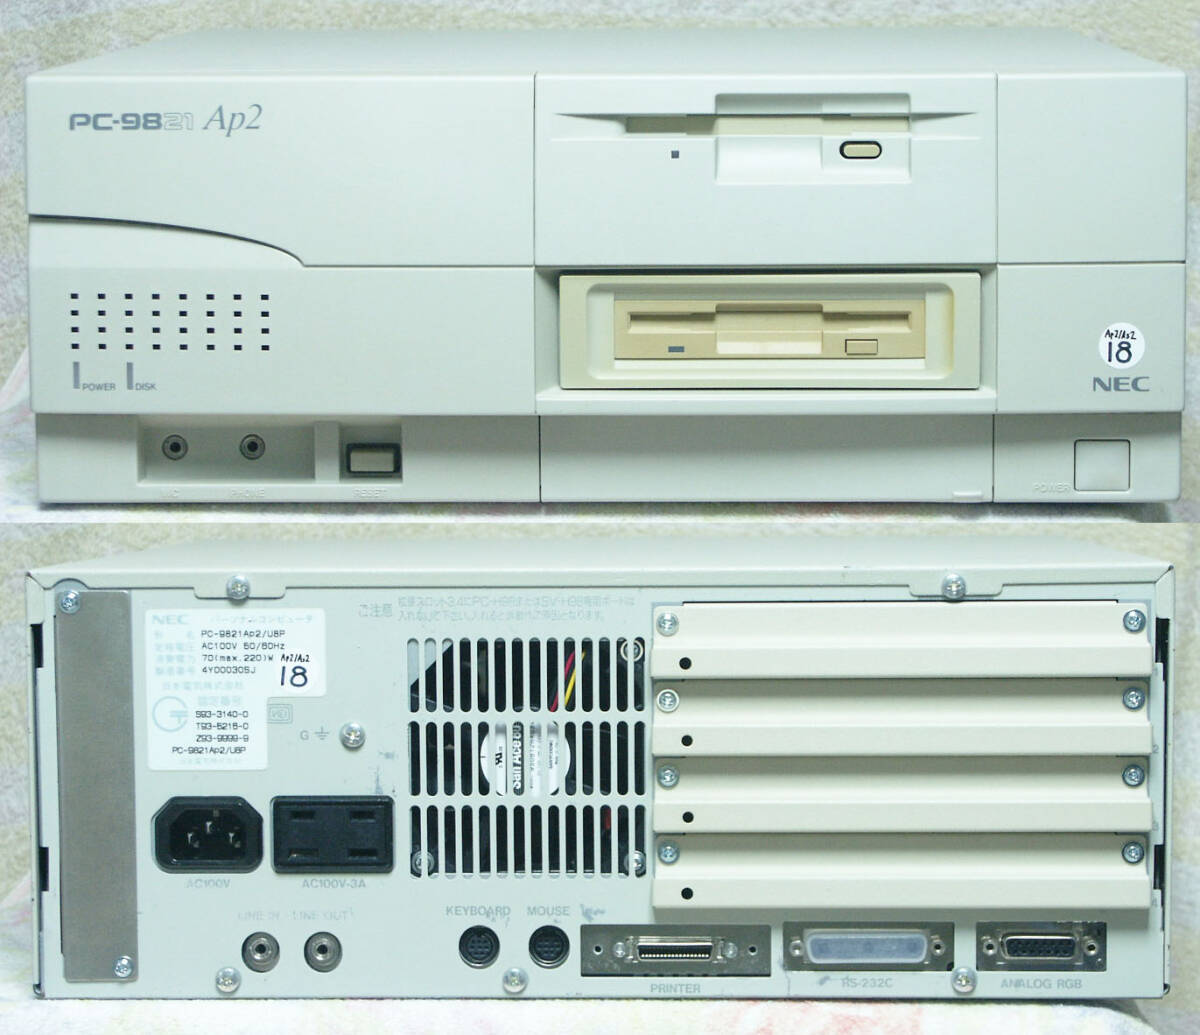 【完全整備品】 PC-9821Ap2 W型番相当 (PODP-83 / 21.6MB / 543MB / 3.5x2 / 86音源FM / S3-928 ) ソリッドコンデンサ - 18_製品外観(現品の写真です)